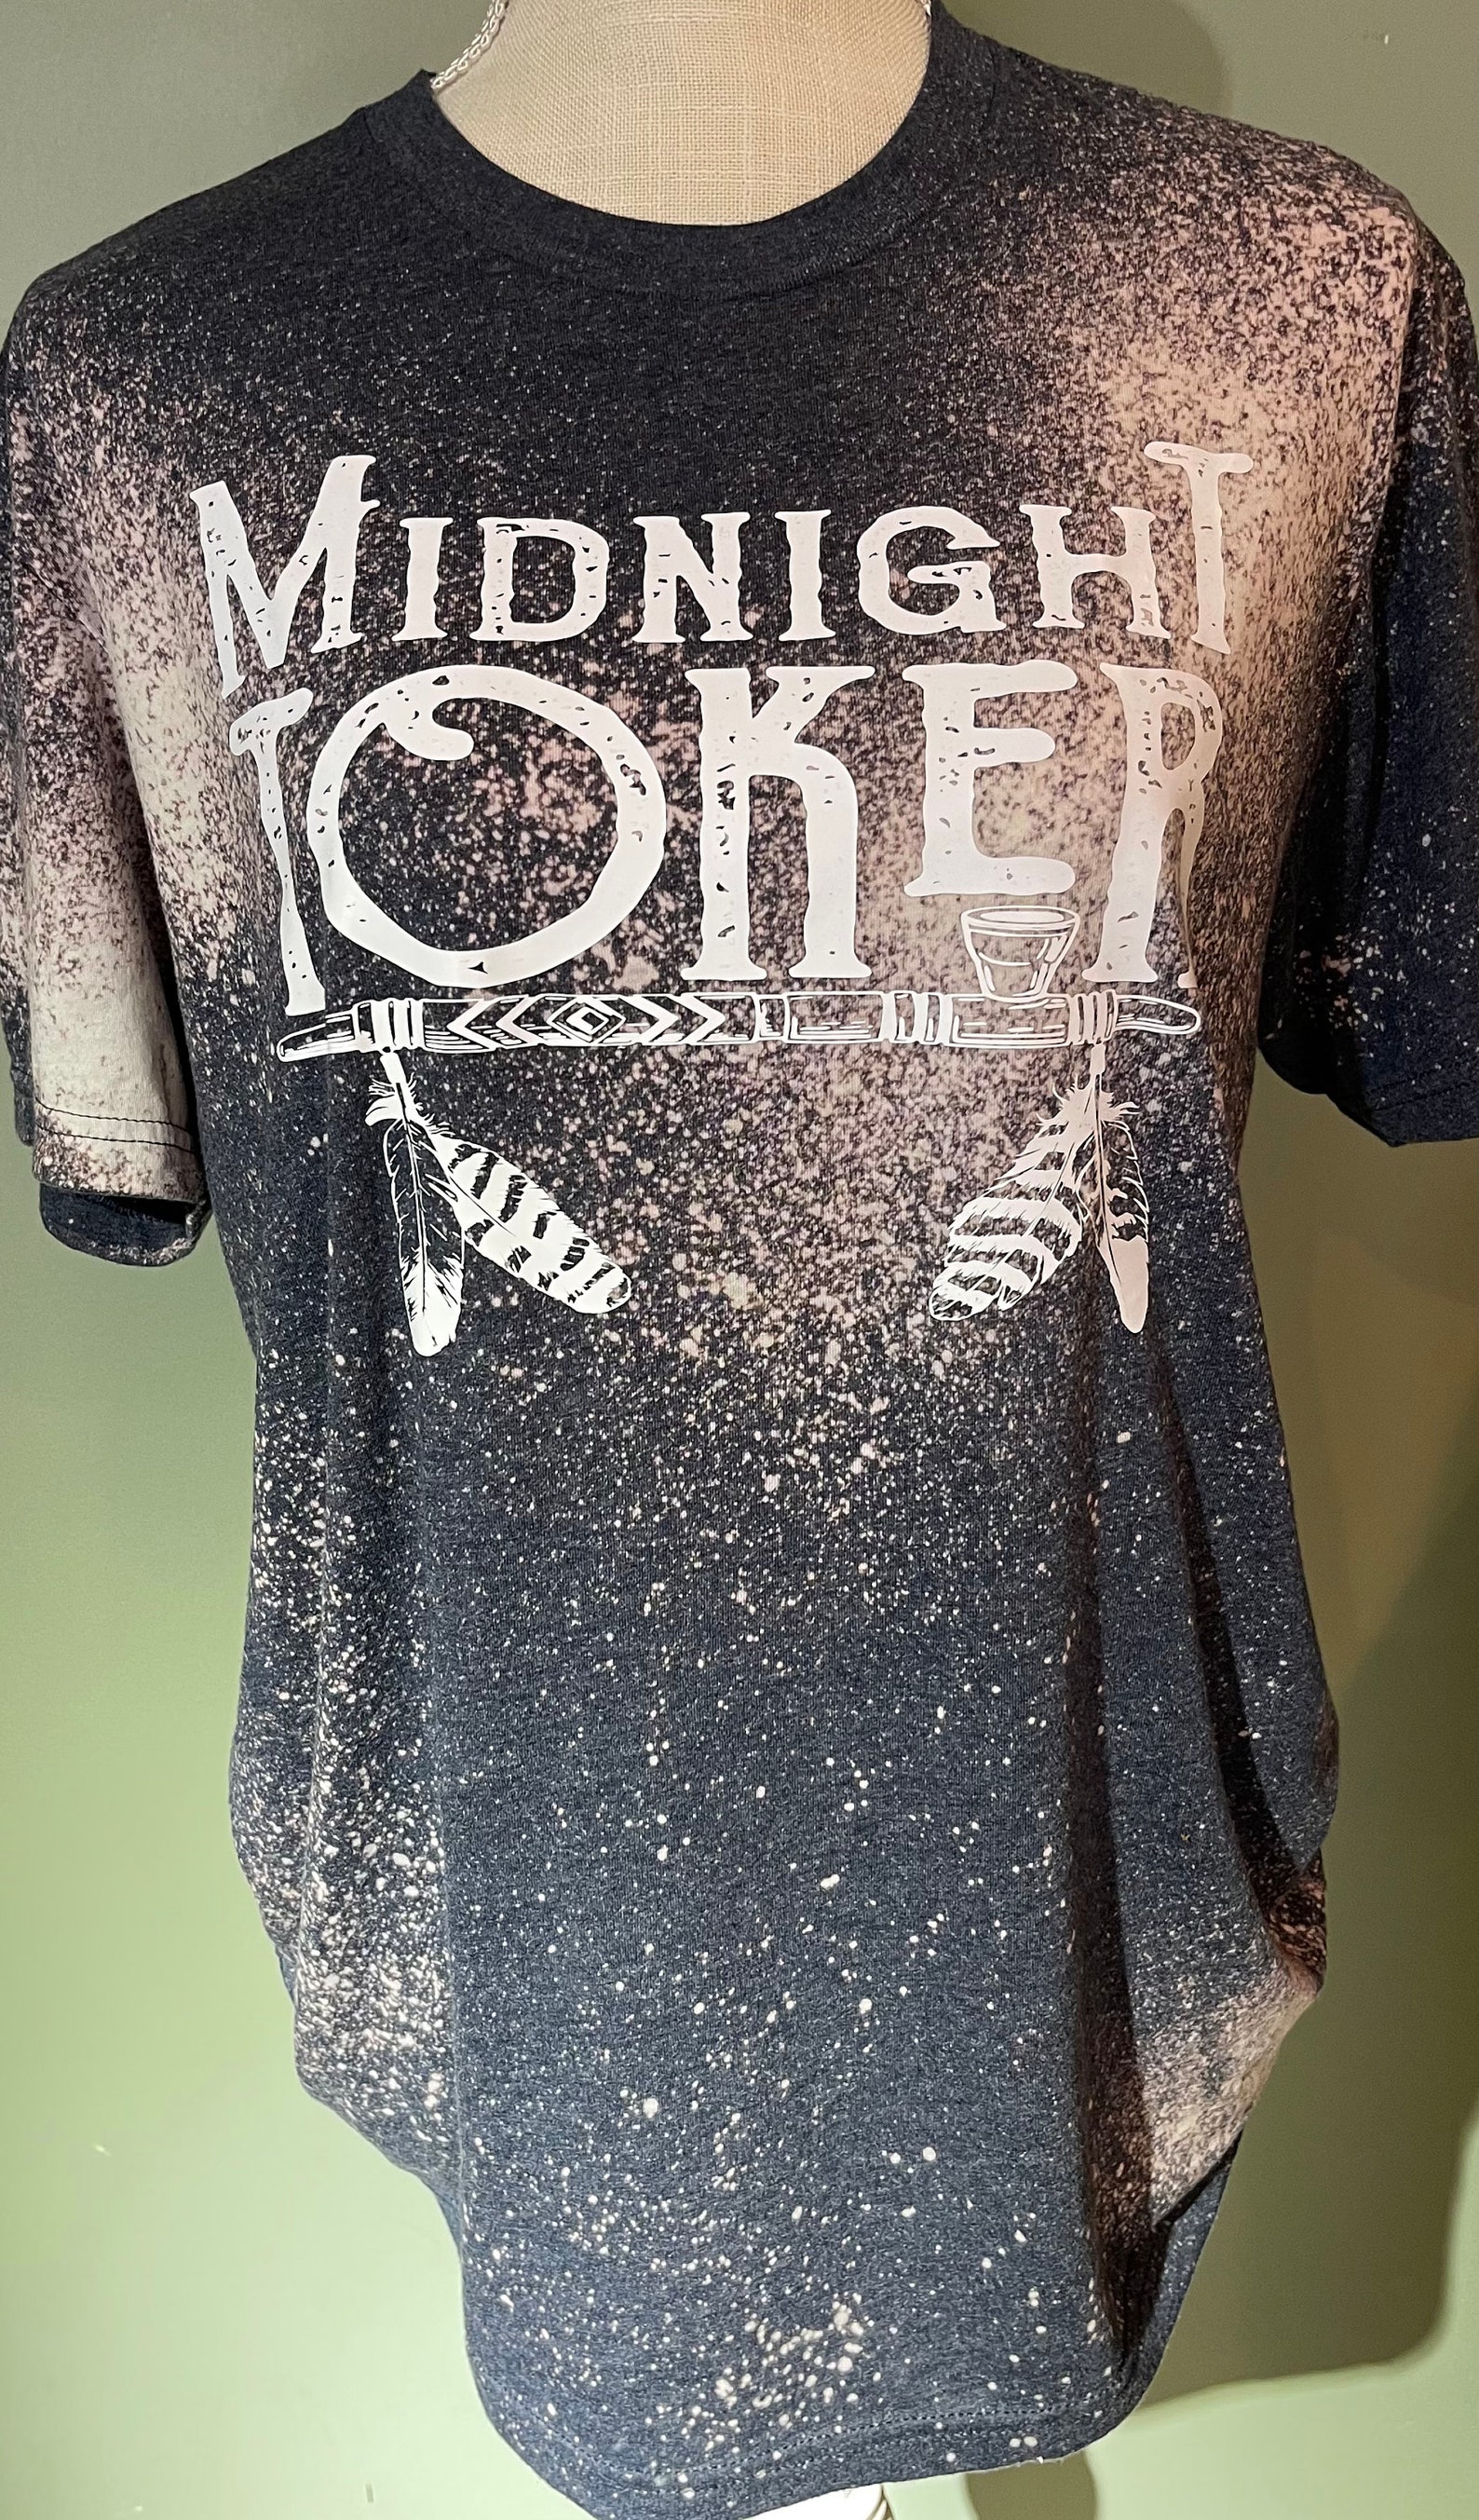 Midnight toker t shirt | Etsy